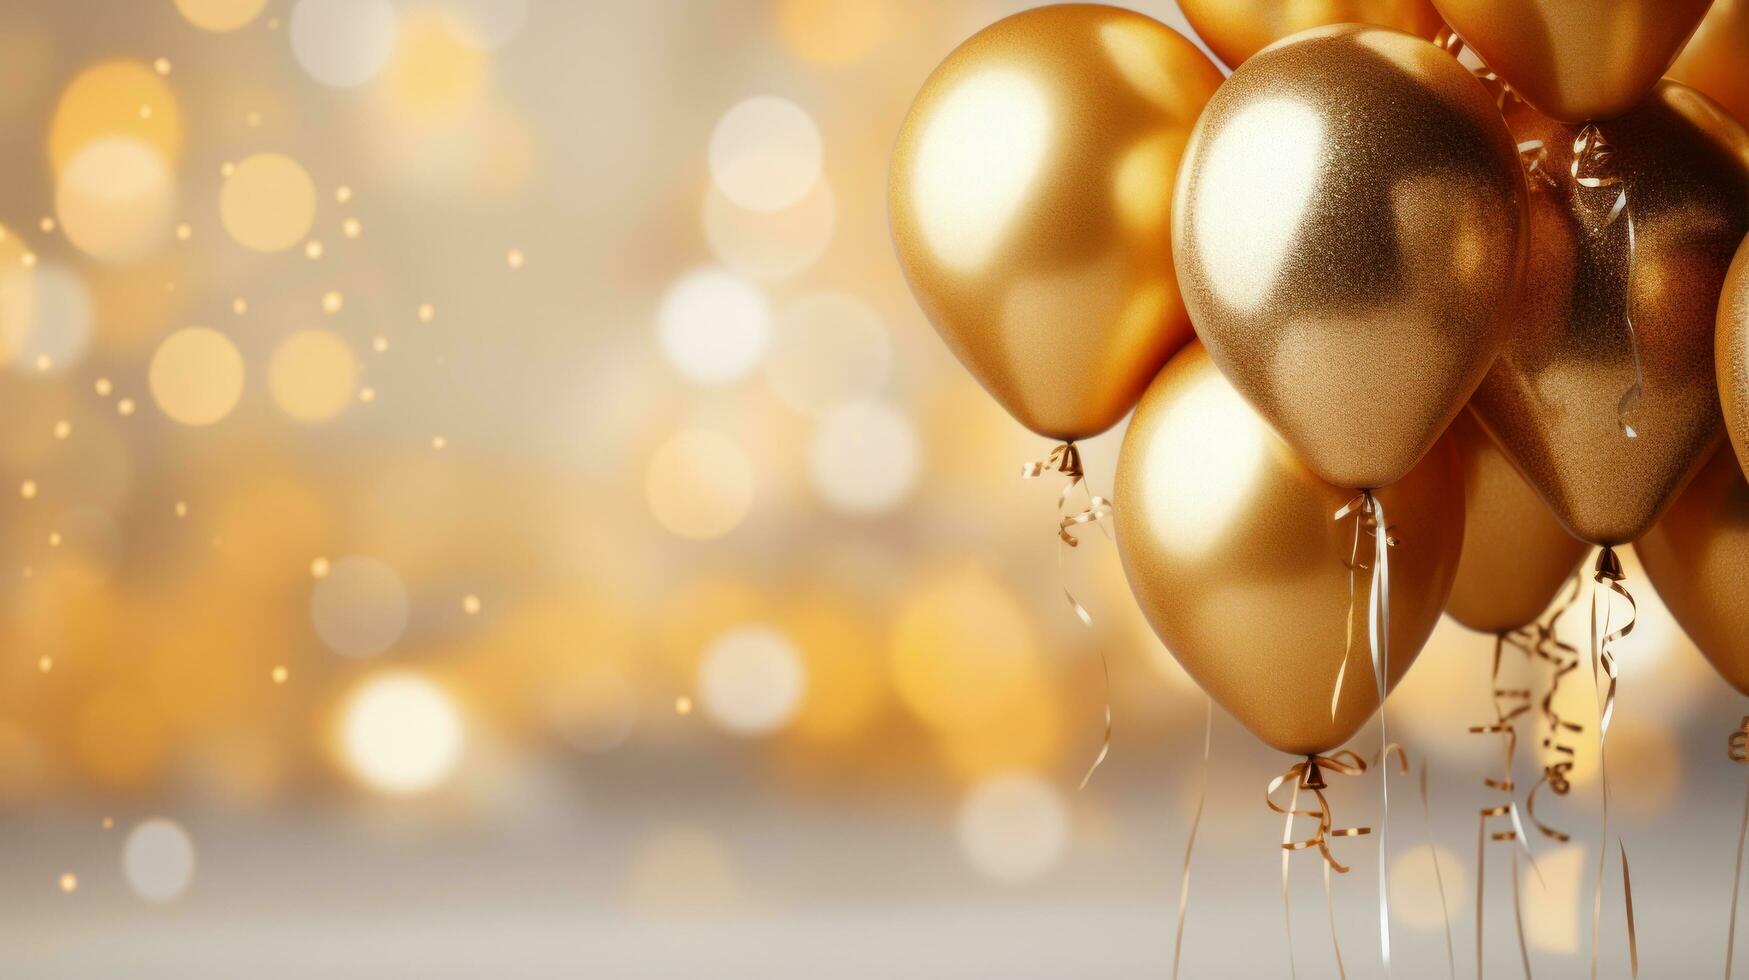 födelsedag firande med guld ballonger och glitter foto